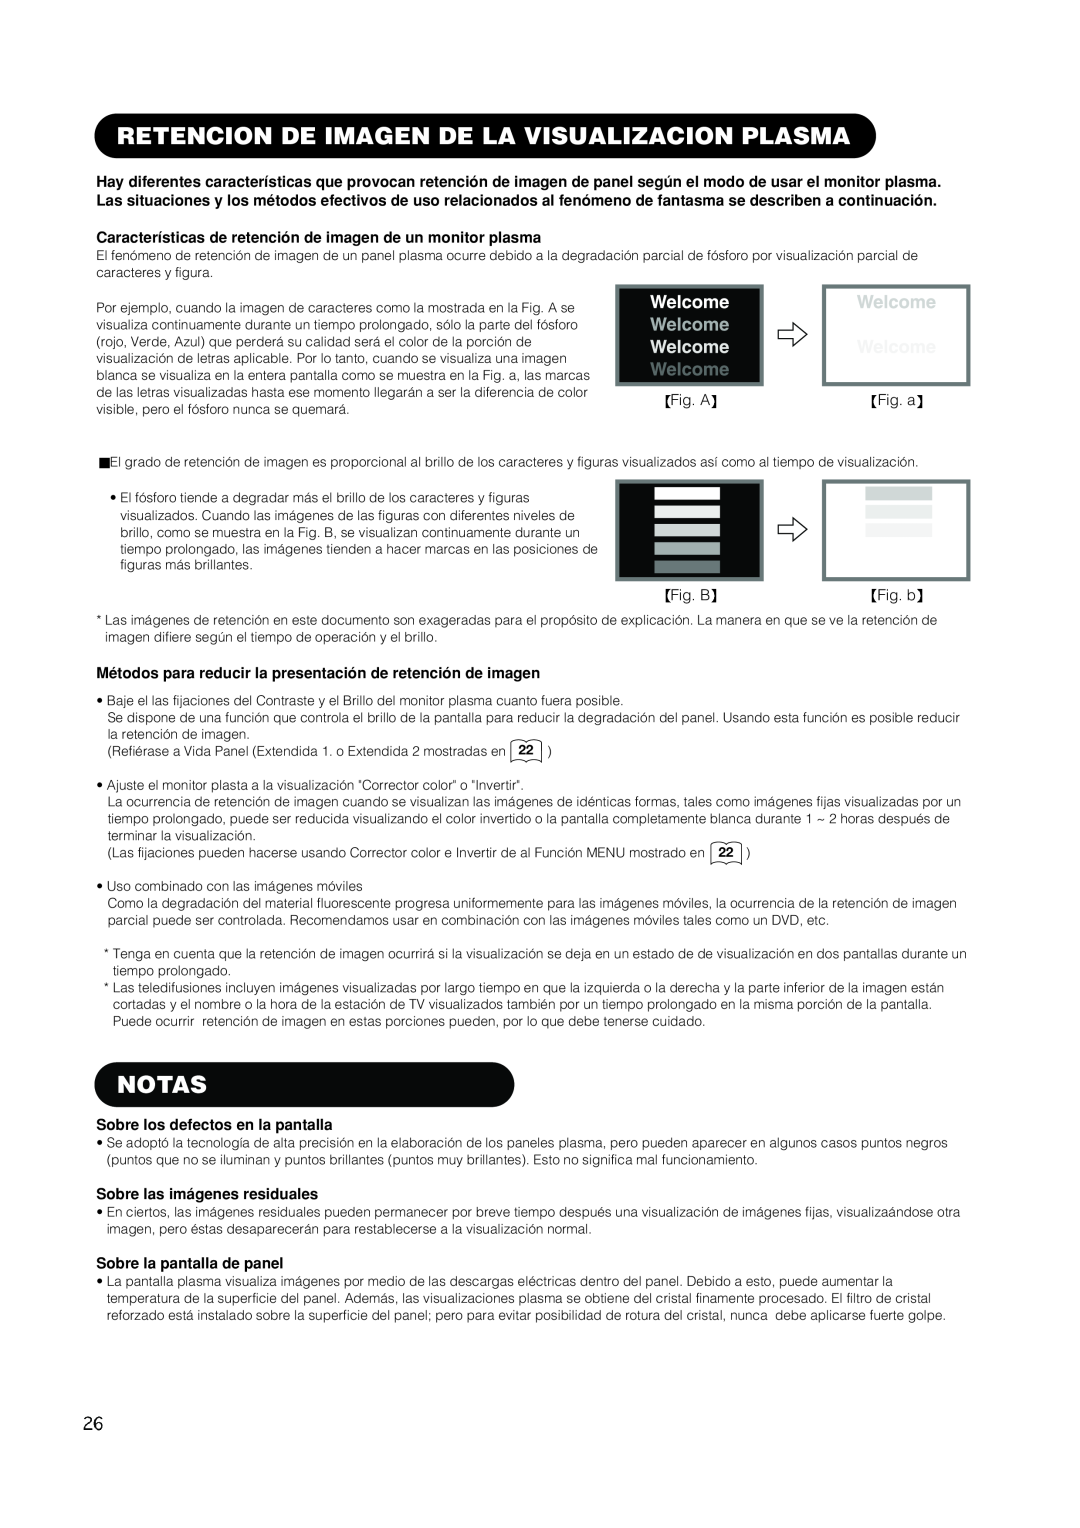 Hitachi PW1A user manual Retencion De Imagen De La Visualizacion Plasma, Notas, Sobre los defectos en la pantalla 